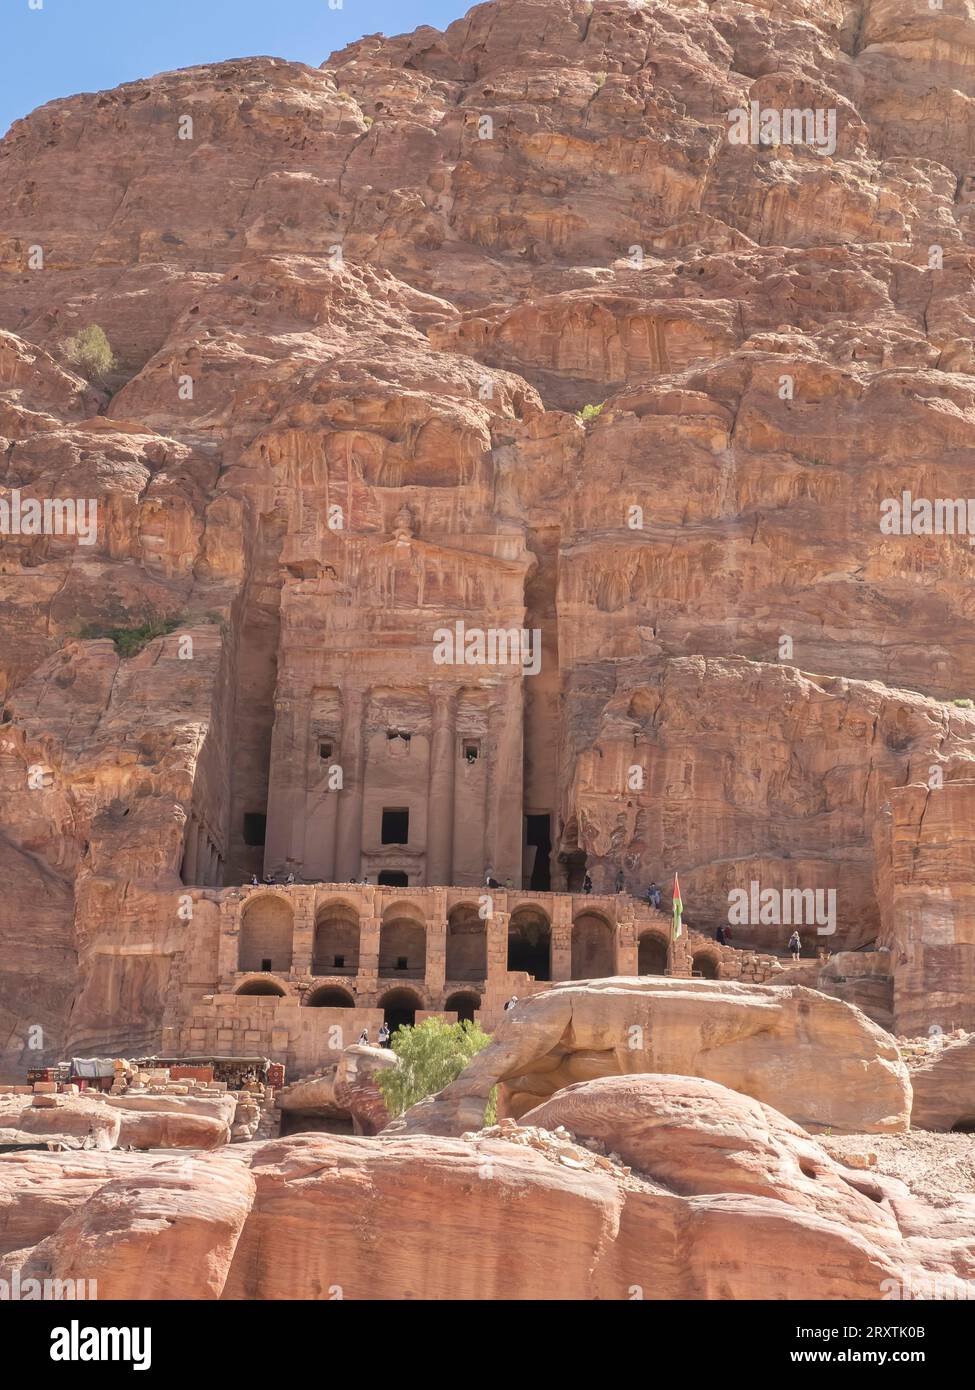 La tombe de l'urne, le parc archéologique de Petra, site du patrimoine mondial de l'UNESCO, l'une des sept nouvelles merveilles du monde, Petra, Jordanie, Moyen-Orient Banque D'Images